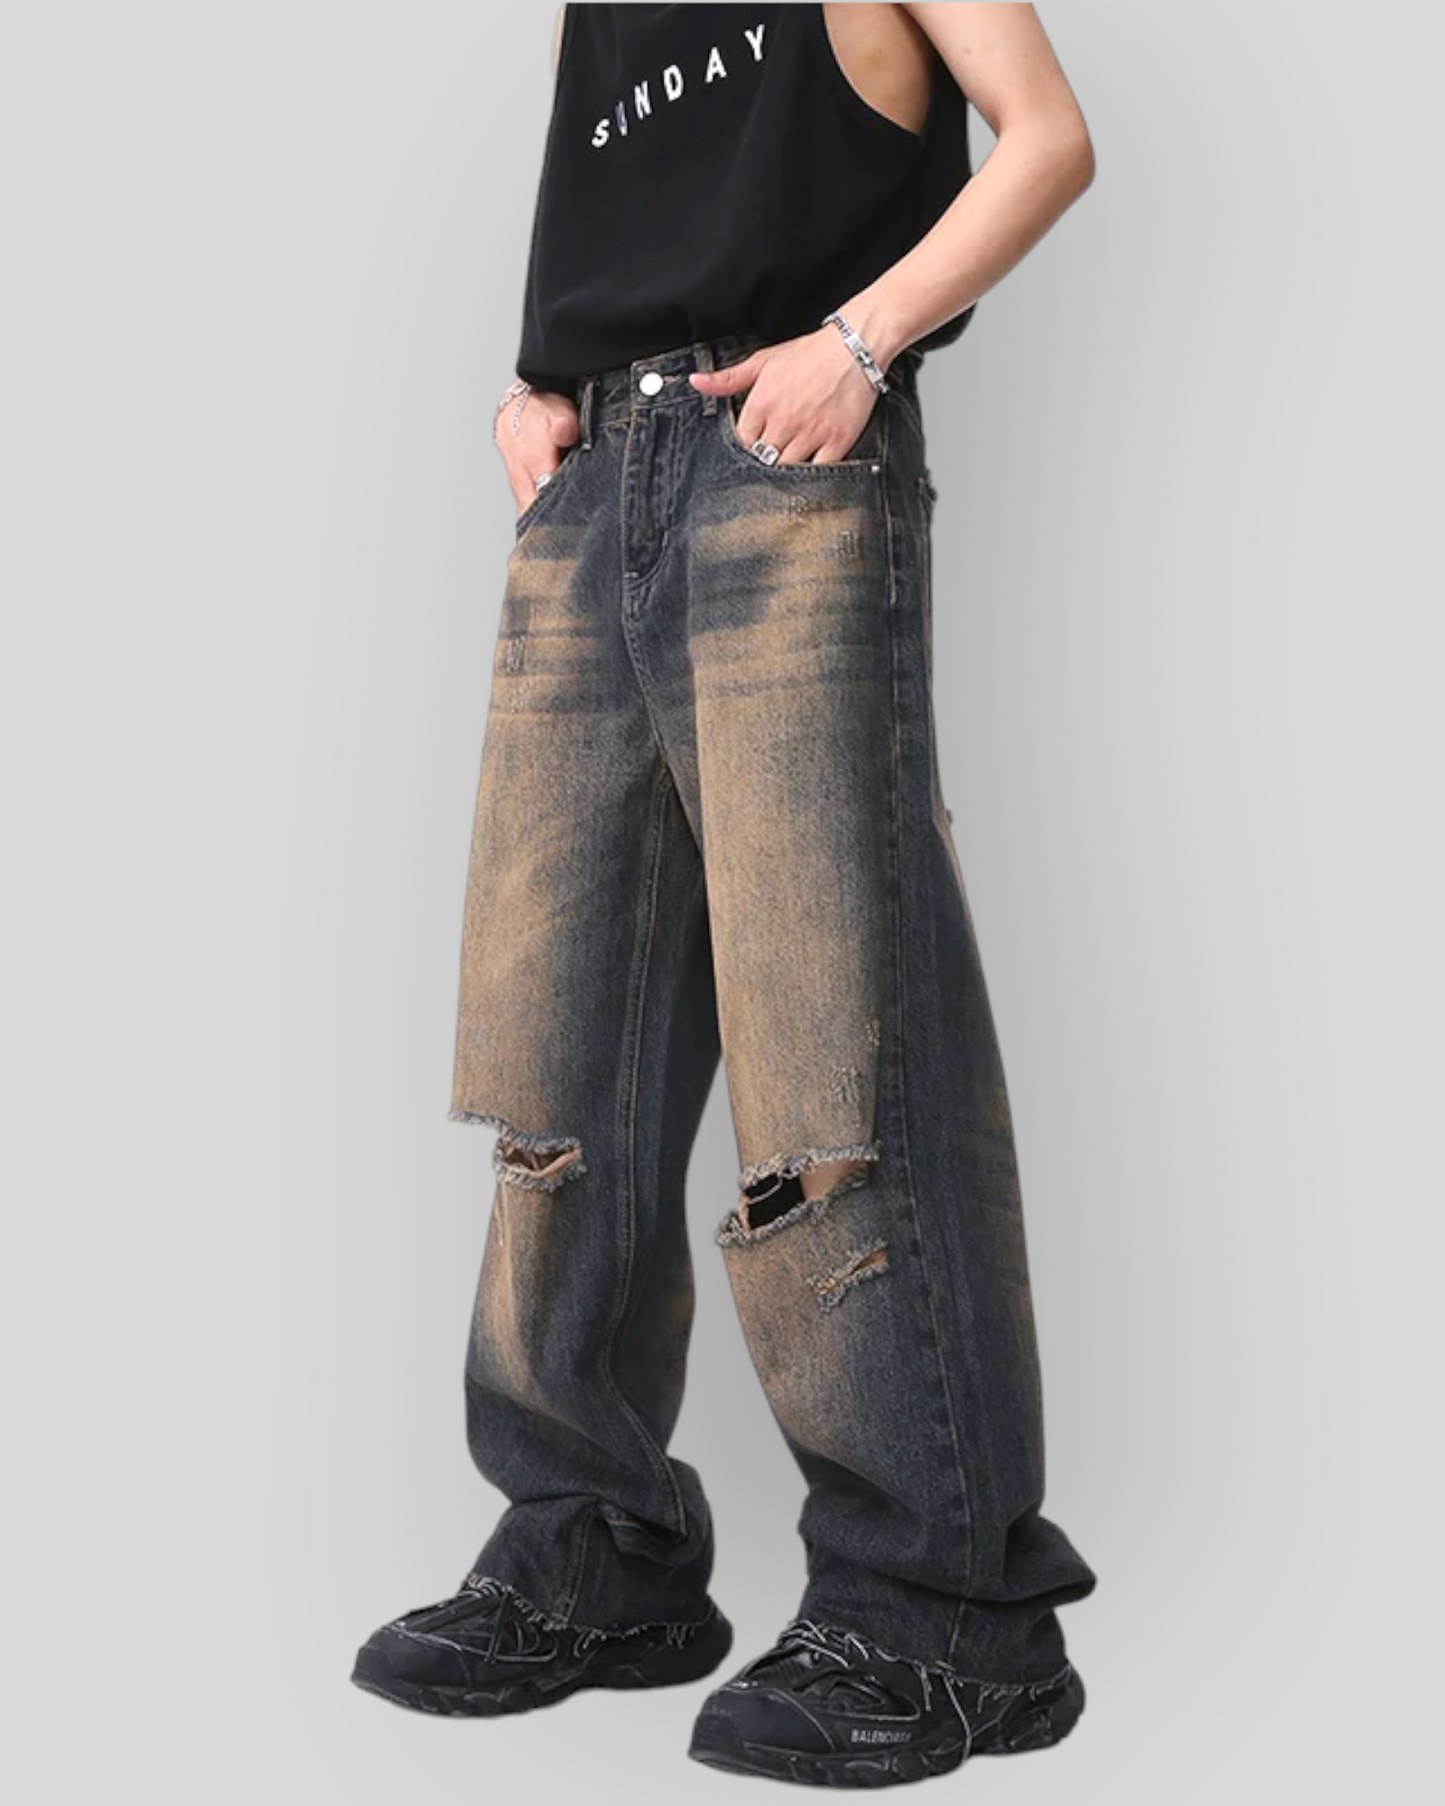 Men's Vintage Baggy Denim Jeans, Wide Legs, American Style